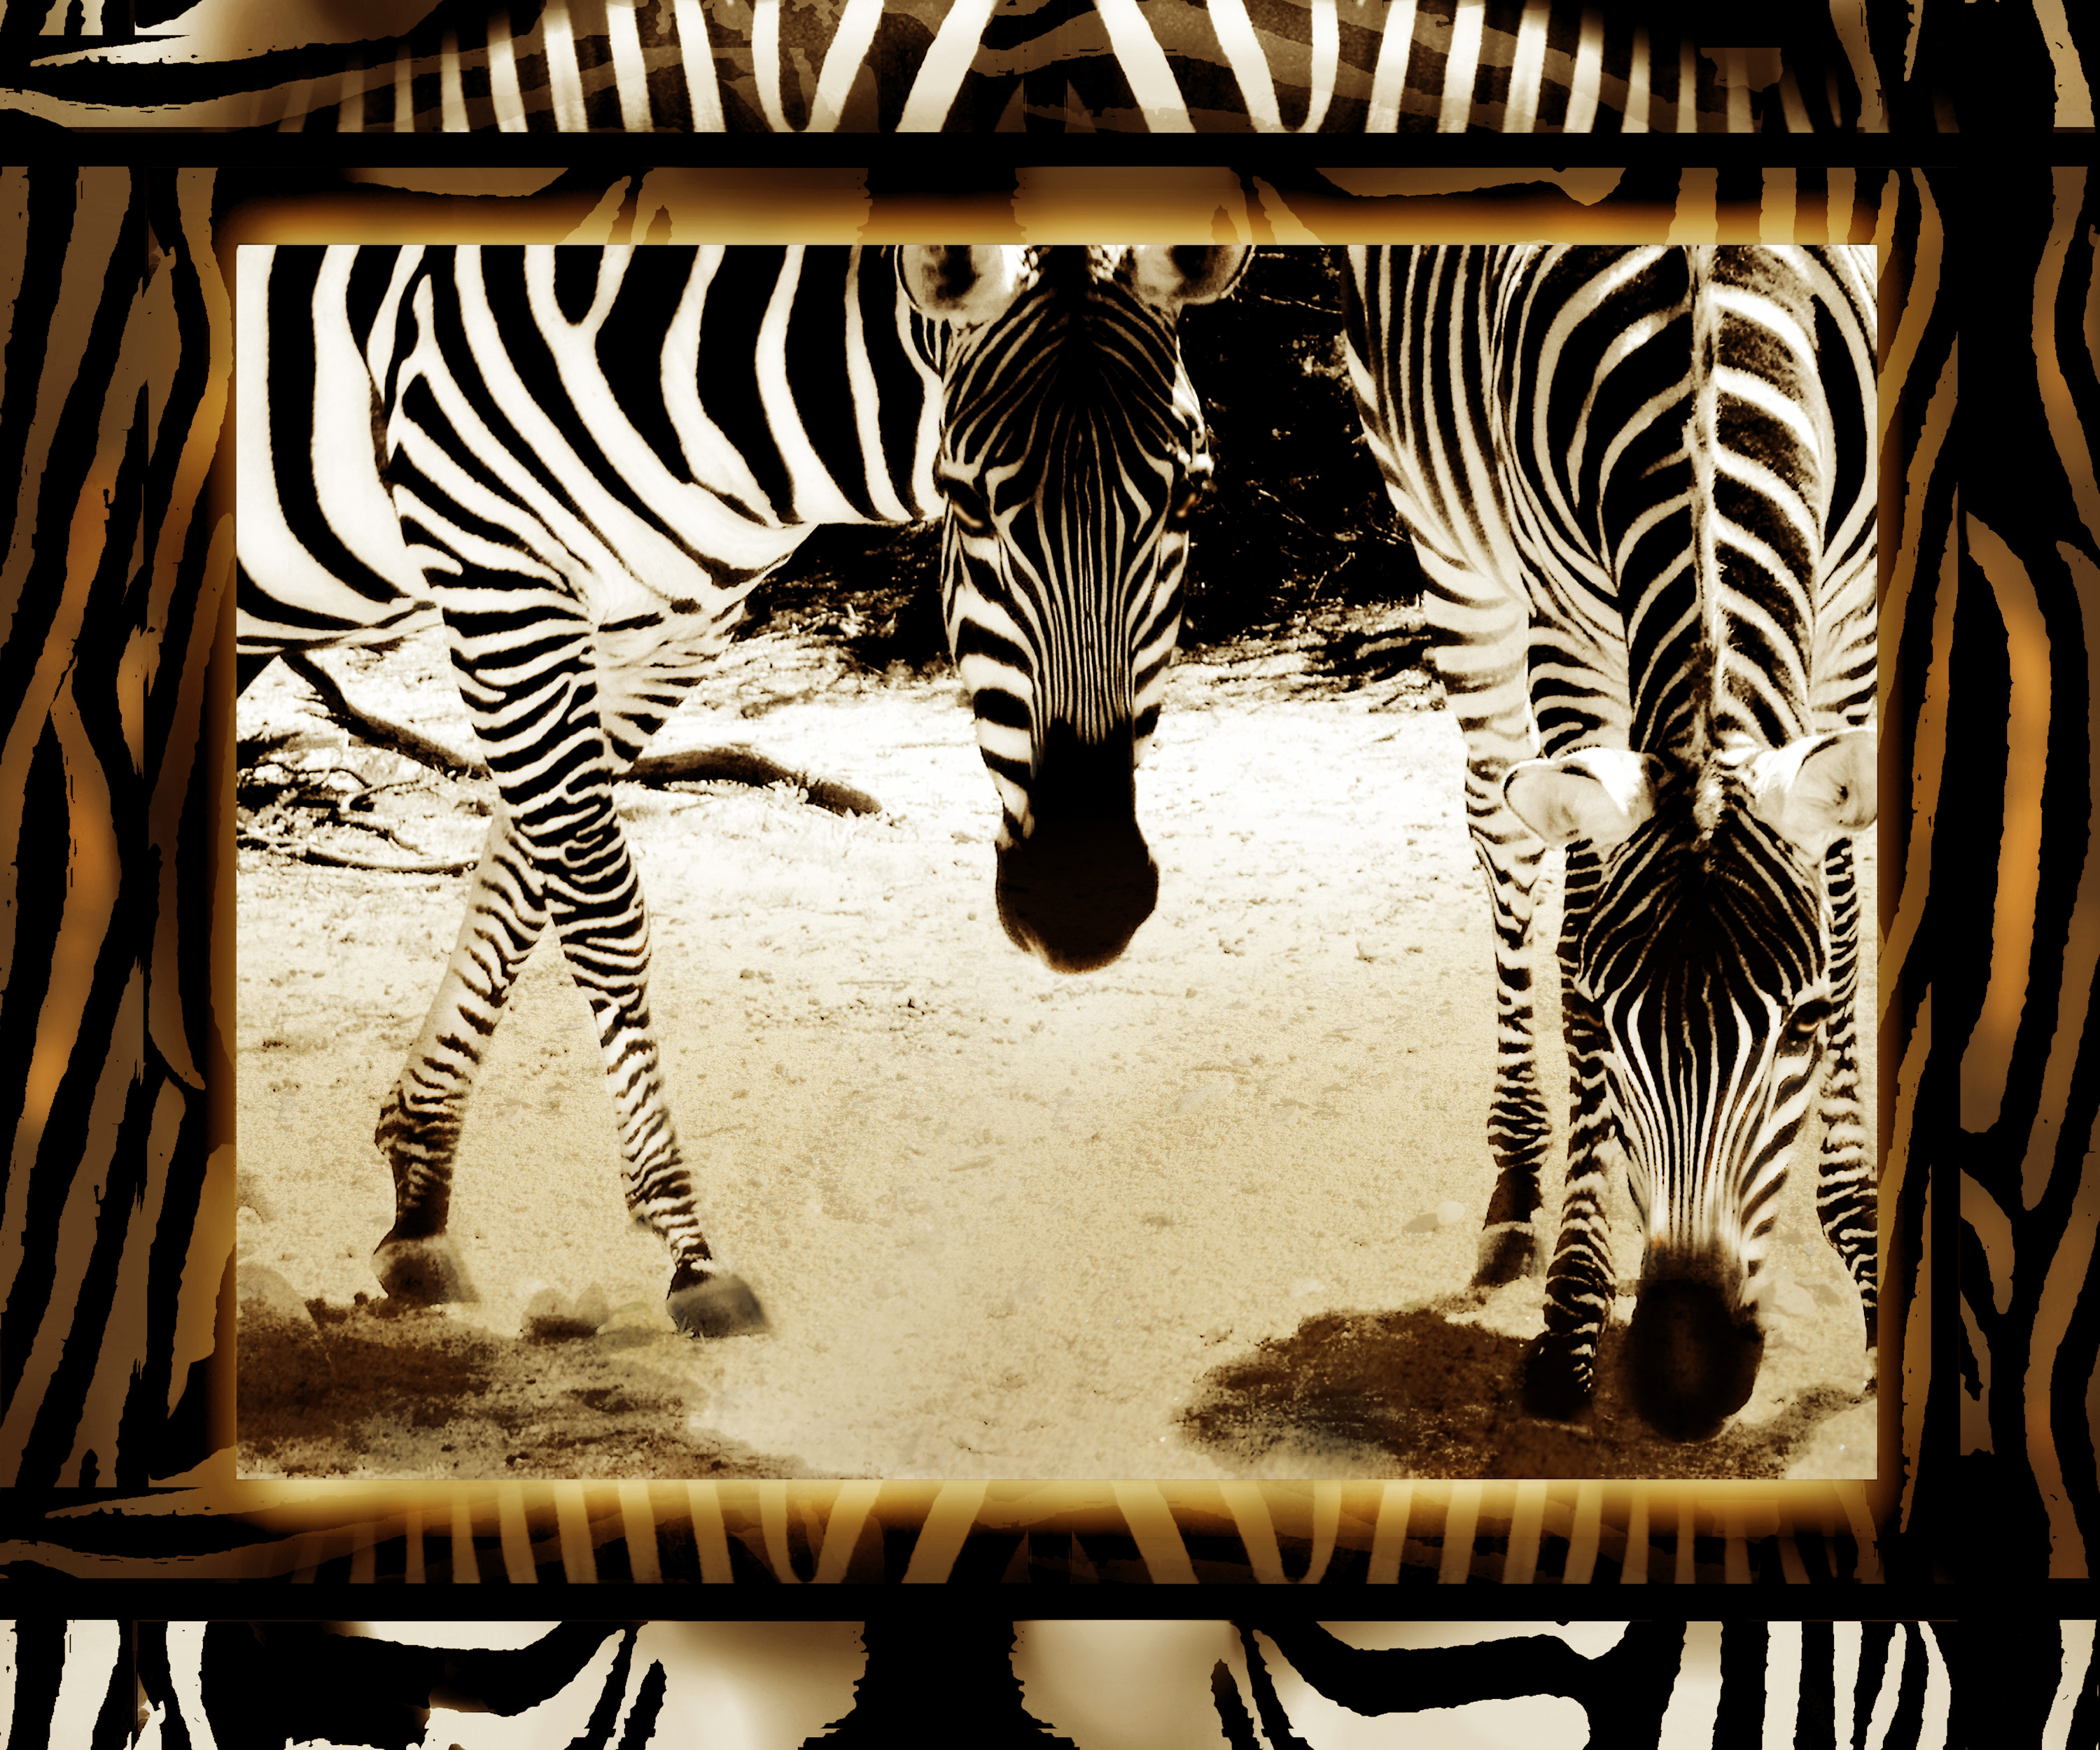 Twin zebras 36x30 july 2021r yngzei